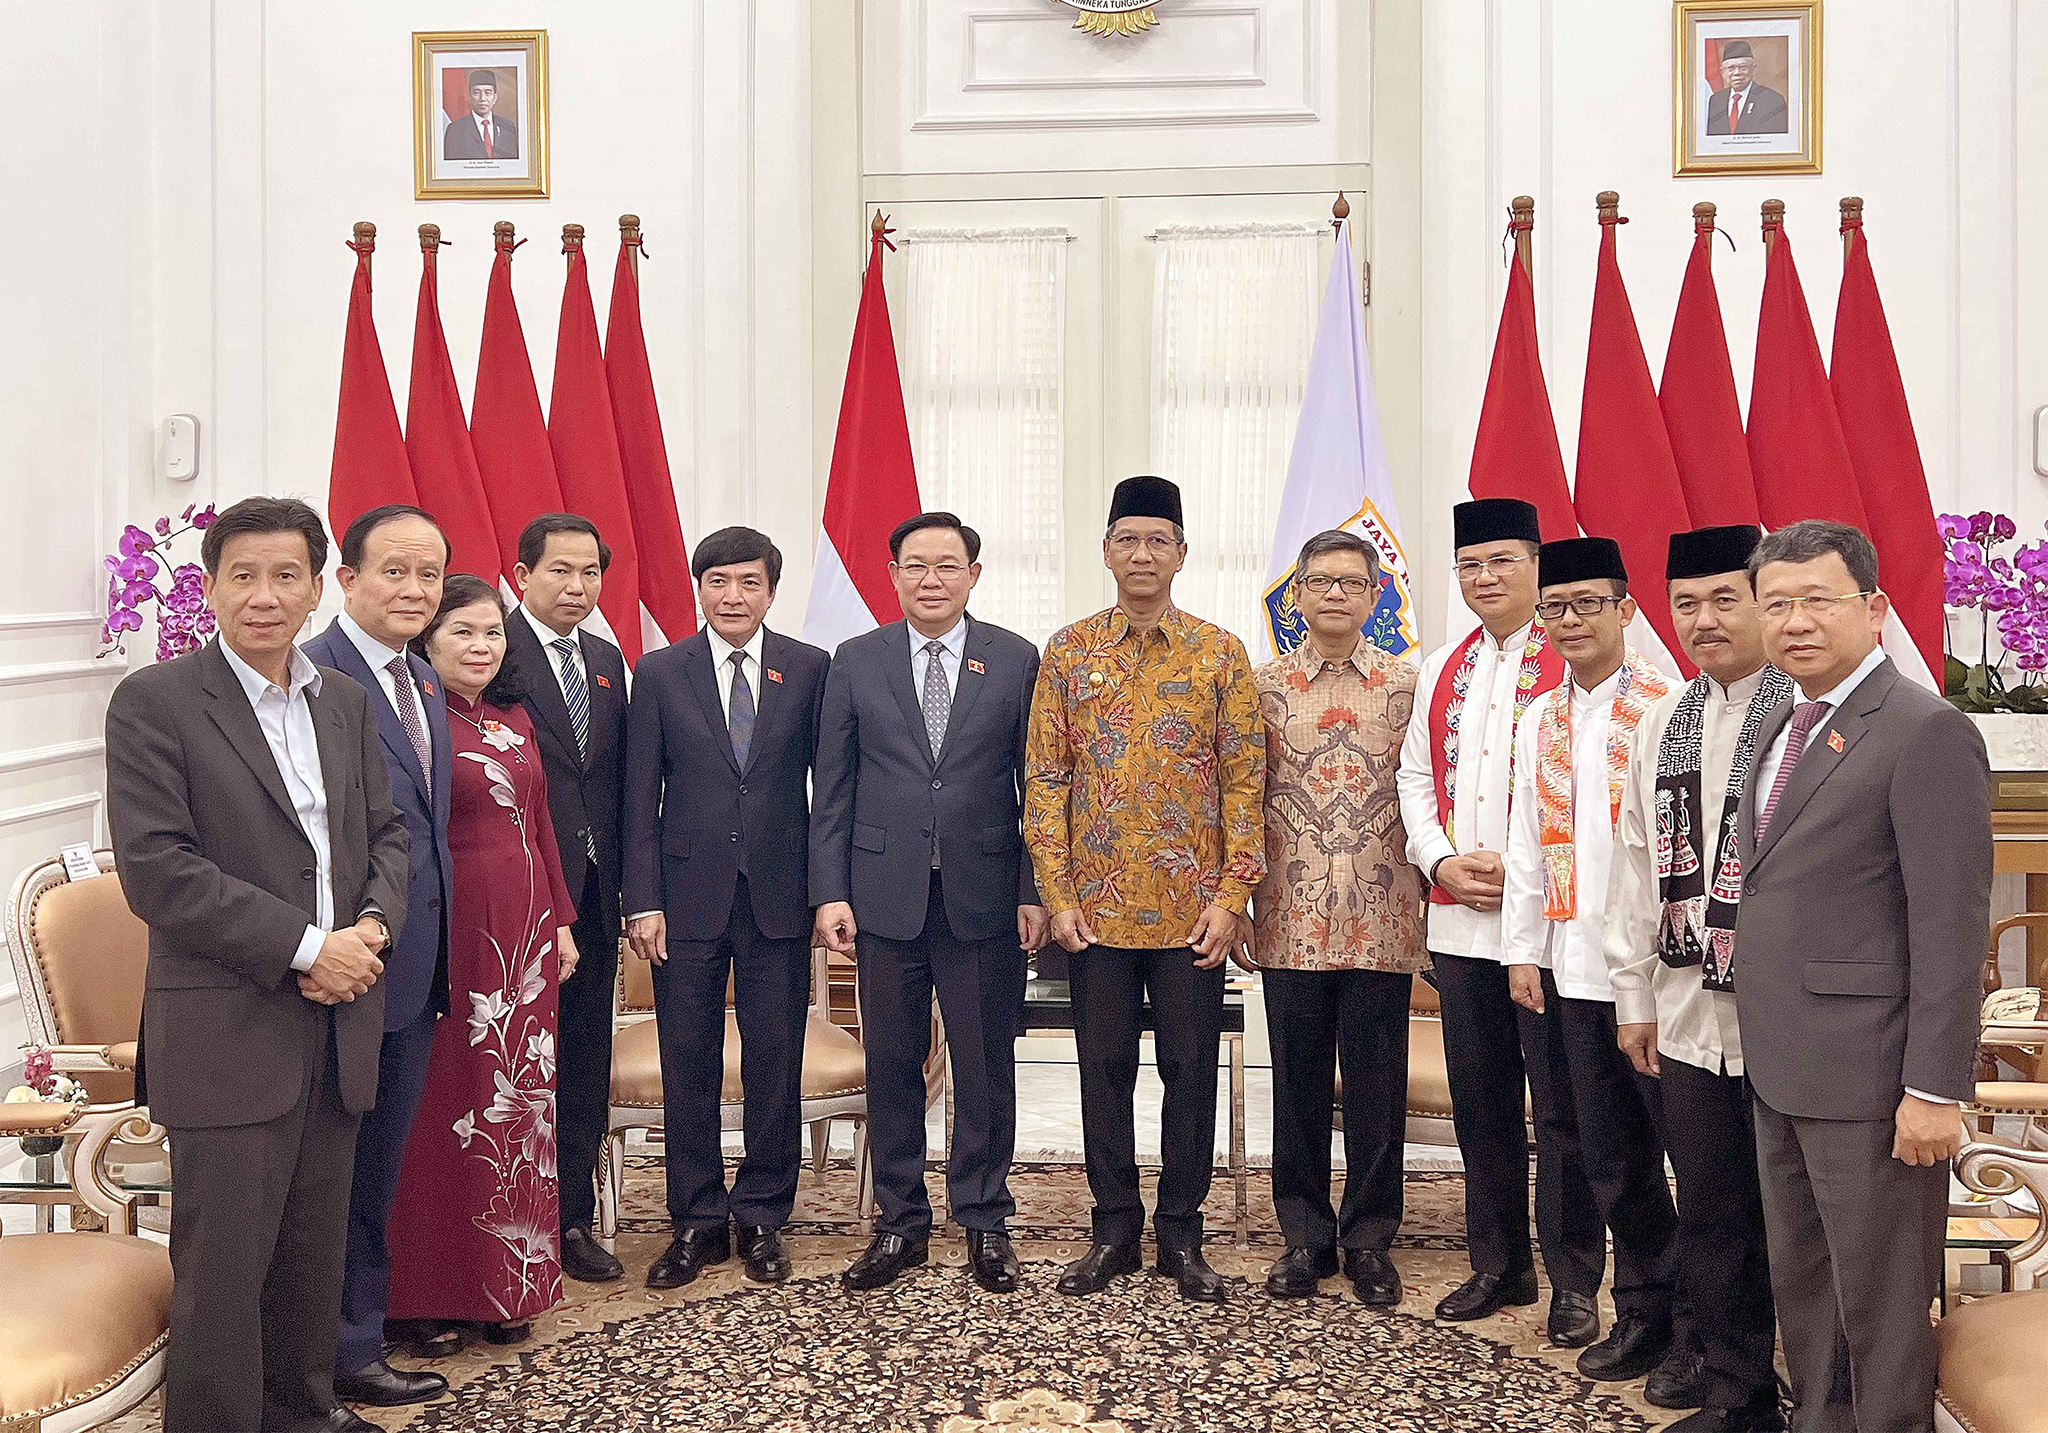 Chủ tịch Quốc hội Vương Đình Huệ và Thống đốc Đặc khu Thủ đô Jakarta Heru Budi Hartono chụp ảnh lưu niệm với các đại biểu. Ảnh: Doãn Tấn